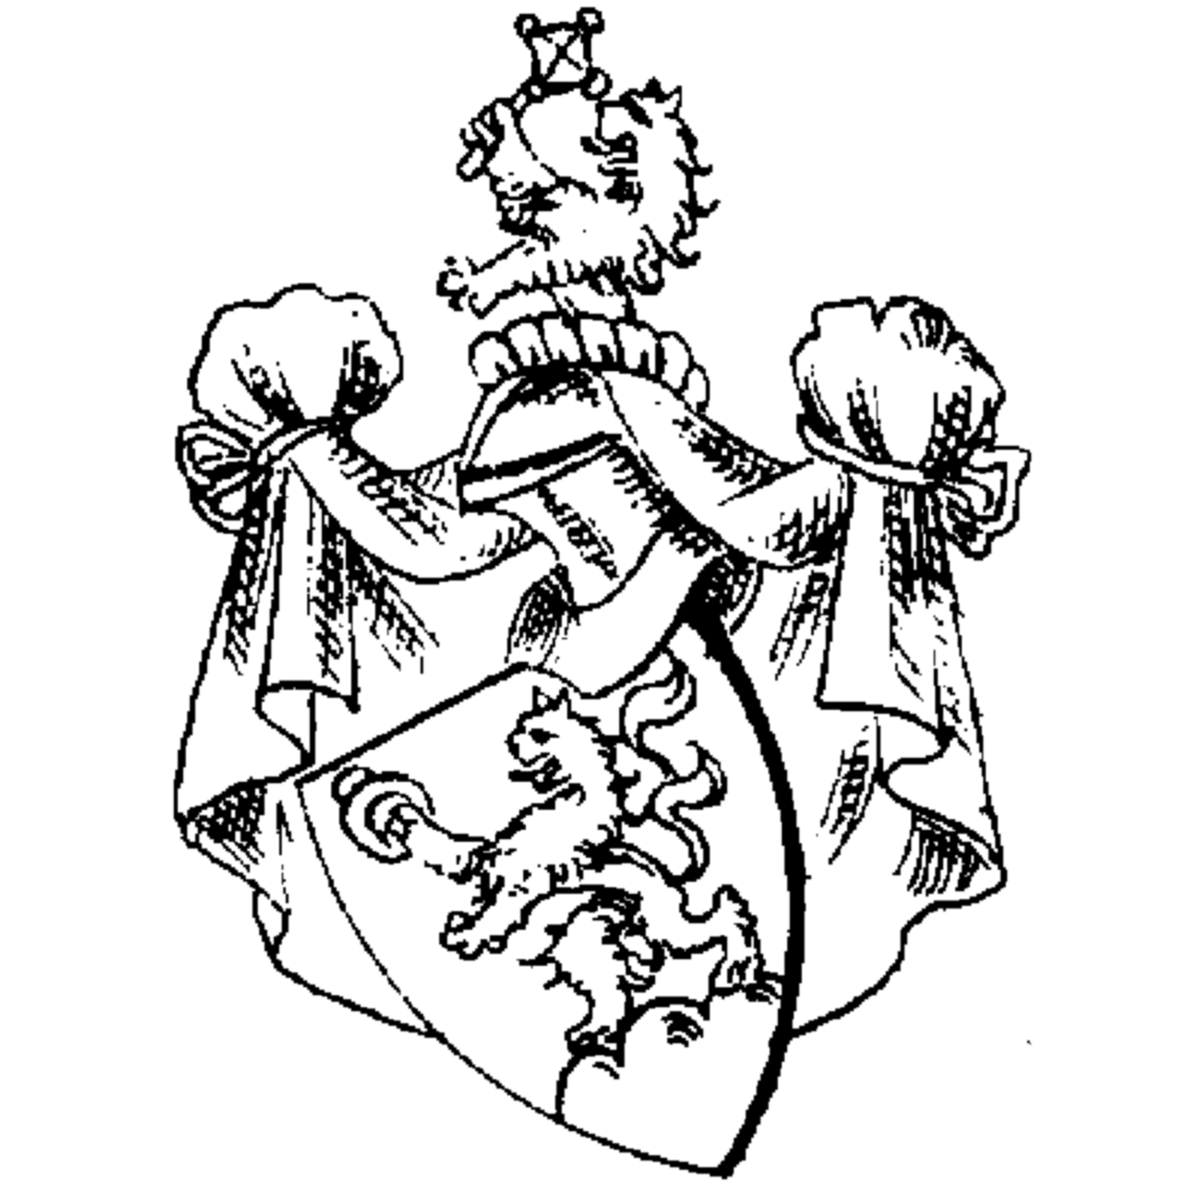 Wappen der Familie Lirer